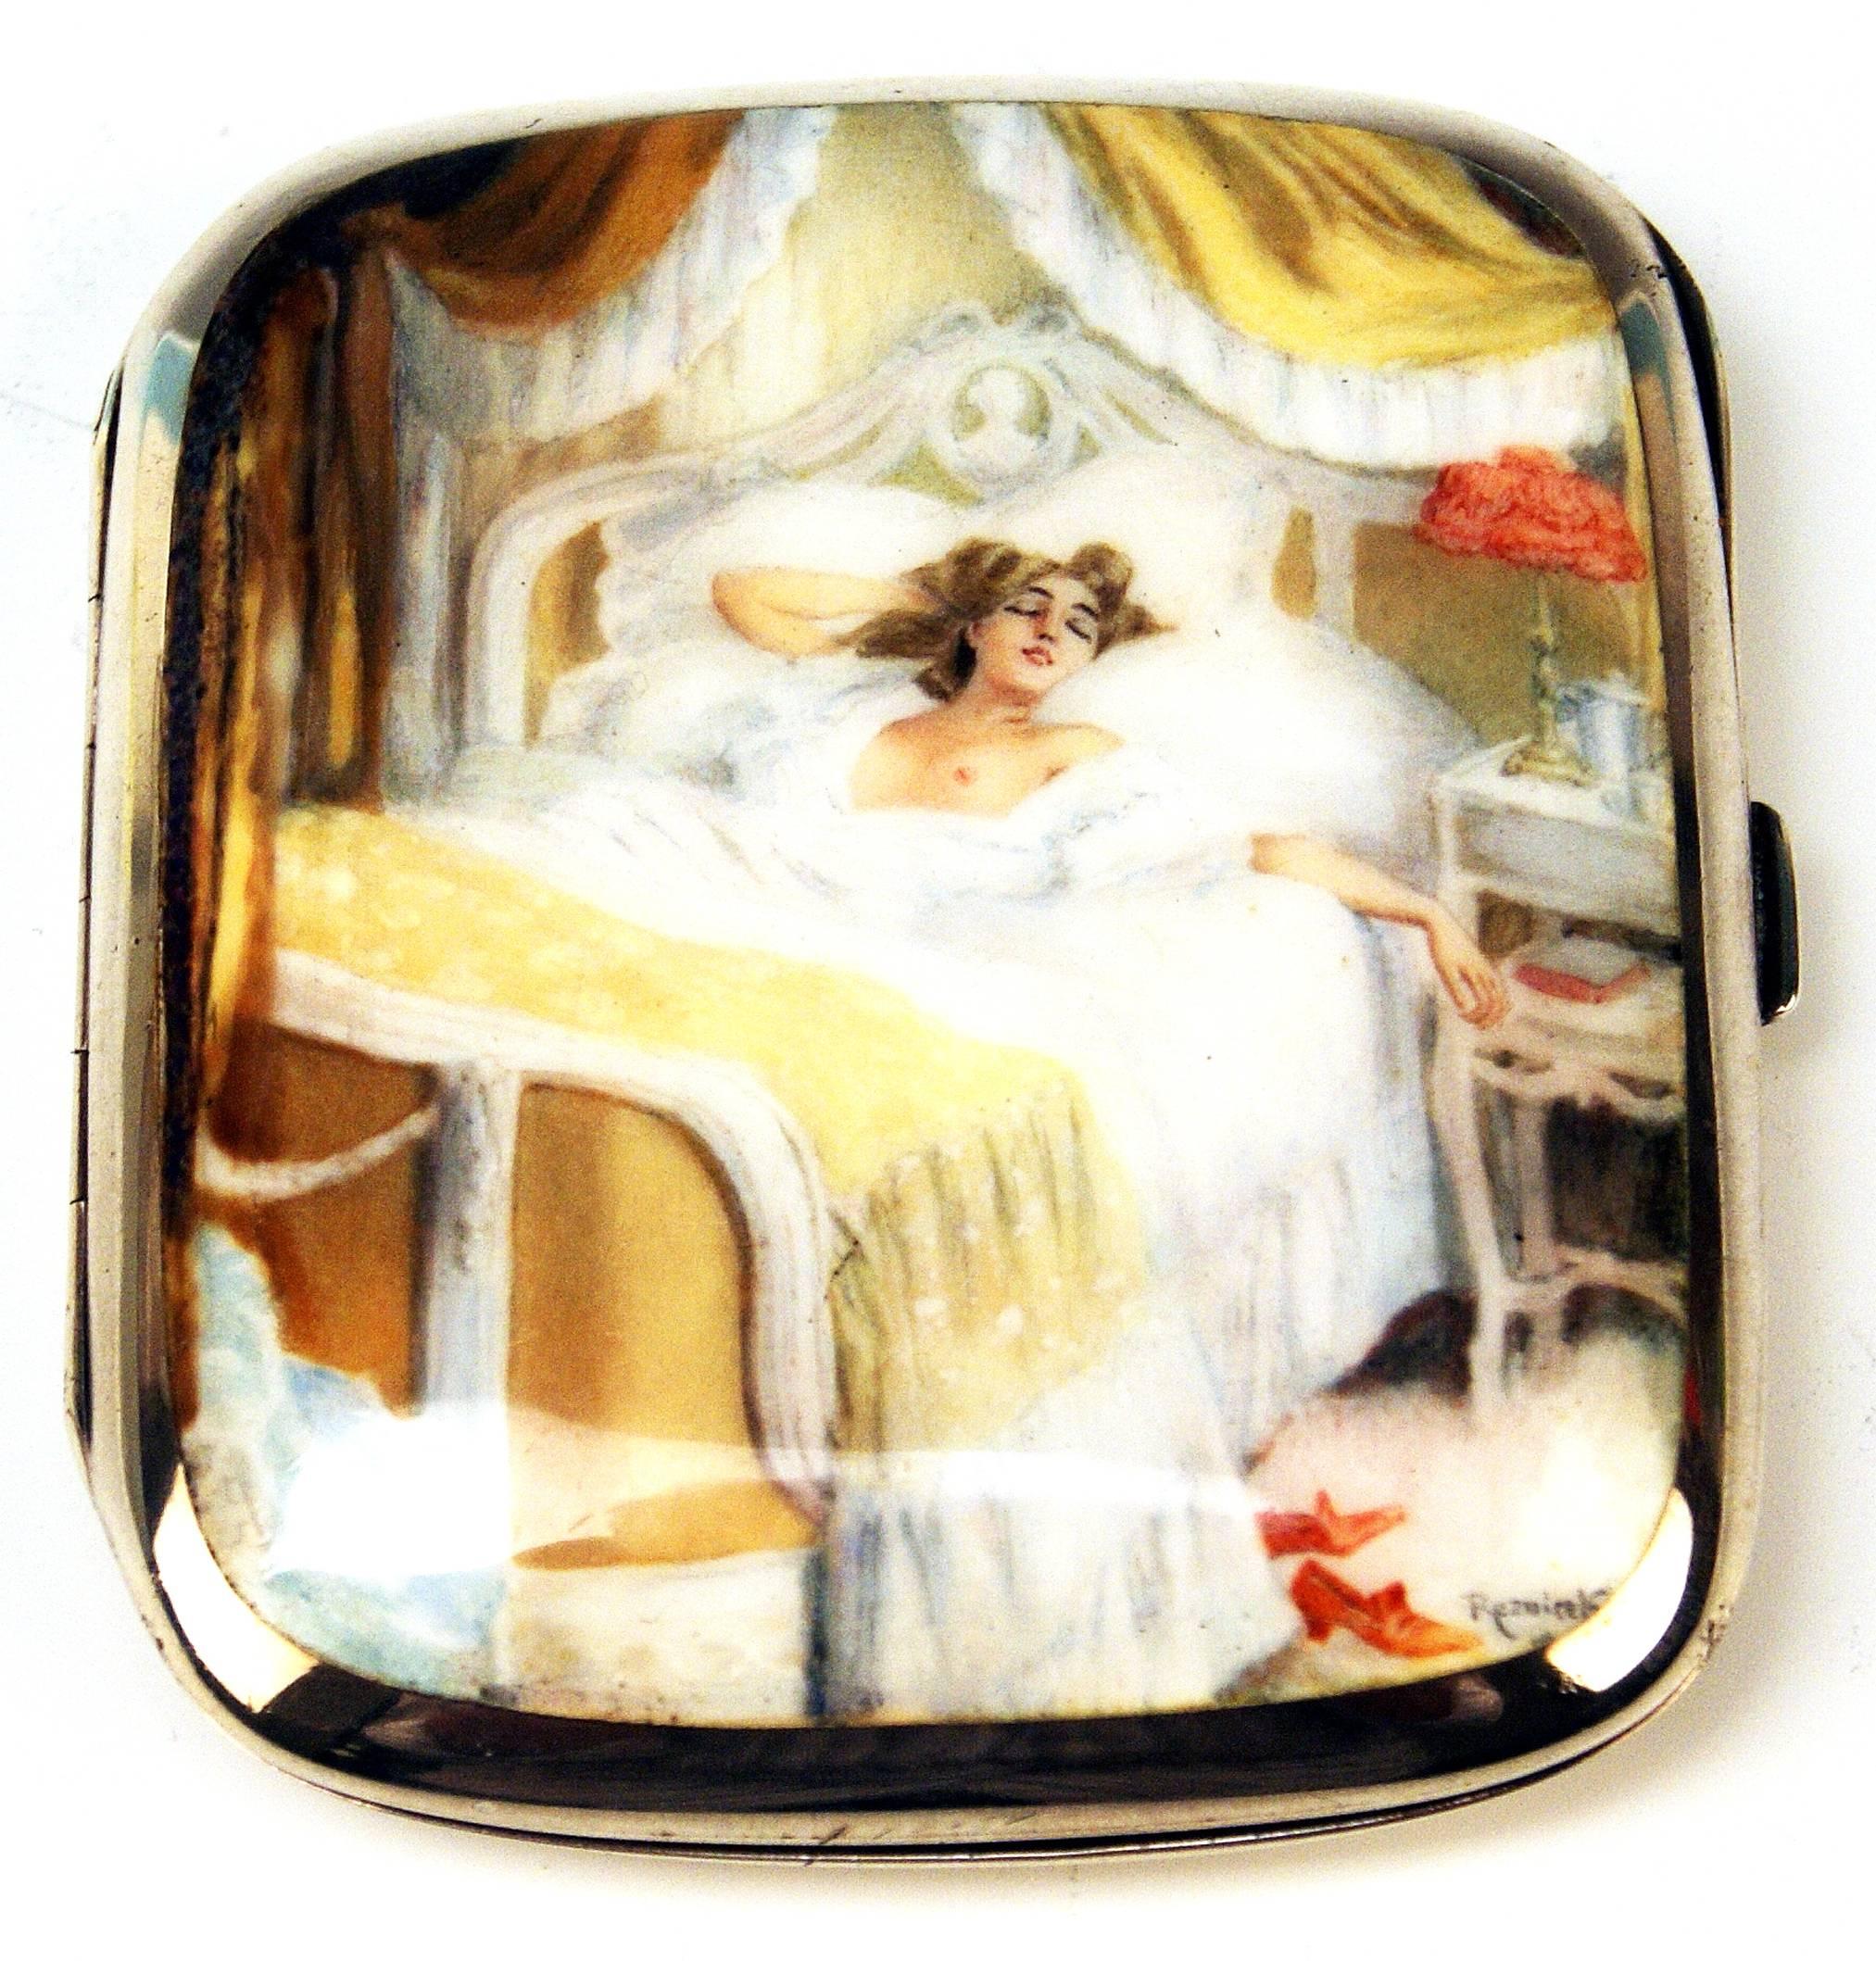 Exquisites Zigarettenetui mit Emaille-Paing:
Aufklappbare Silberdose mit verziertem Deckel, Darstellung einer jungen Dame in ihrem Bett in einem luxuriös eingerichteten Schlafzimmer, Signatur 